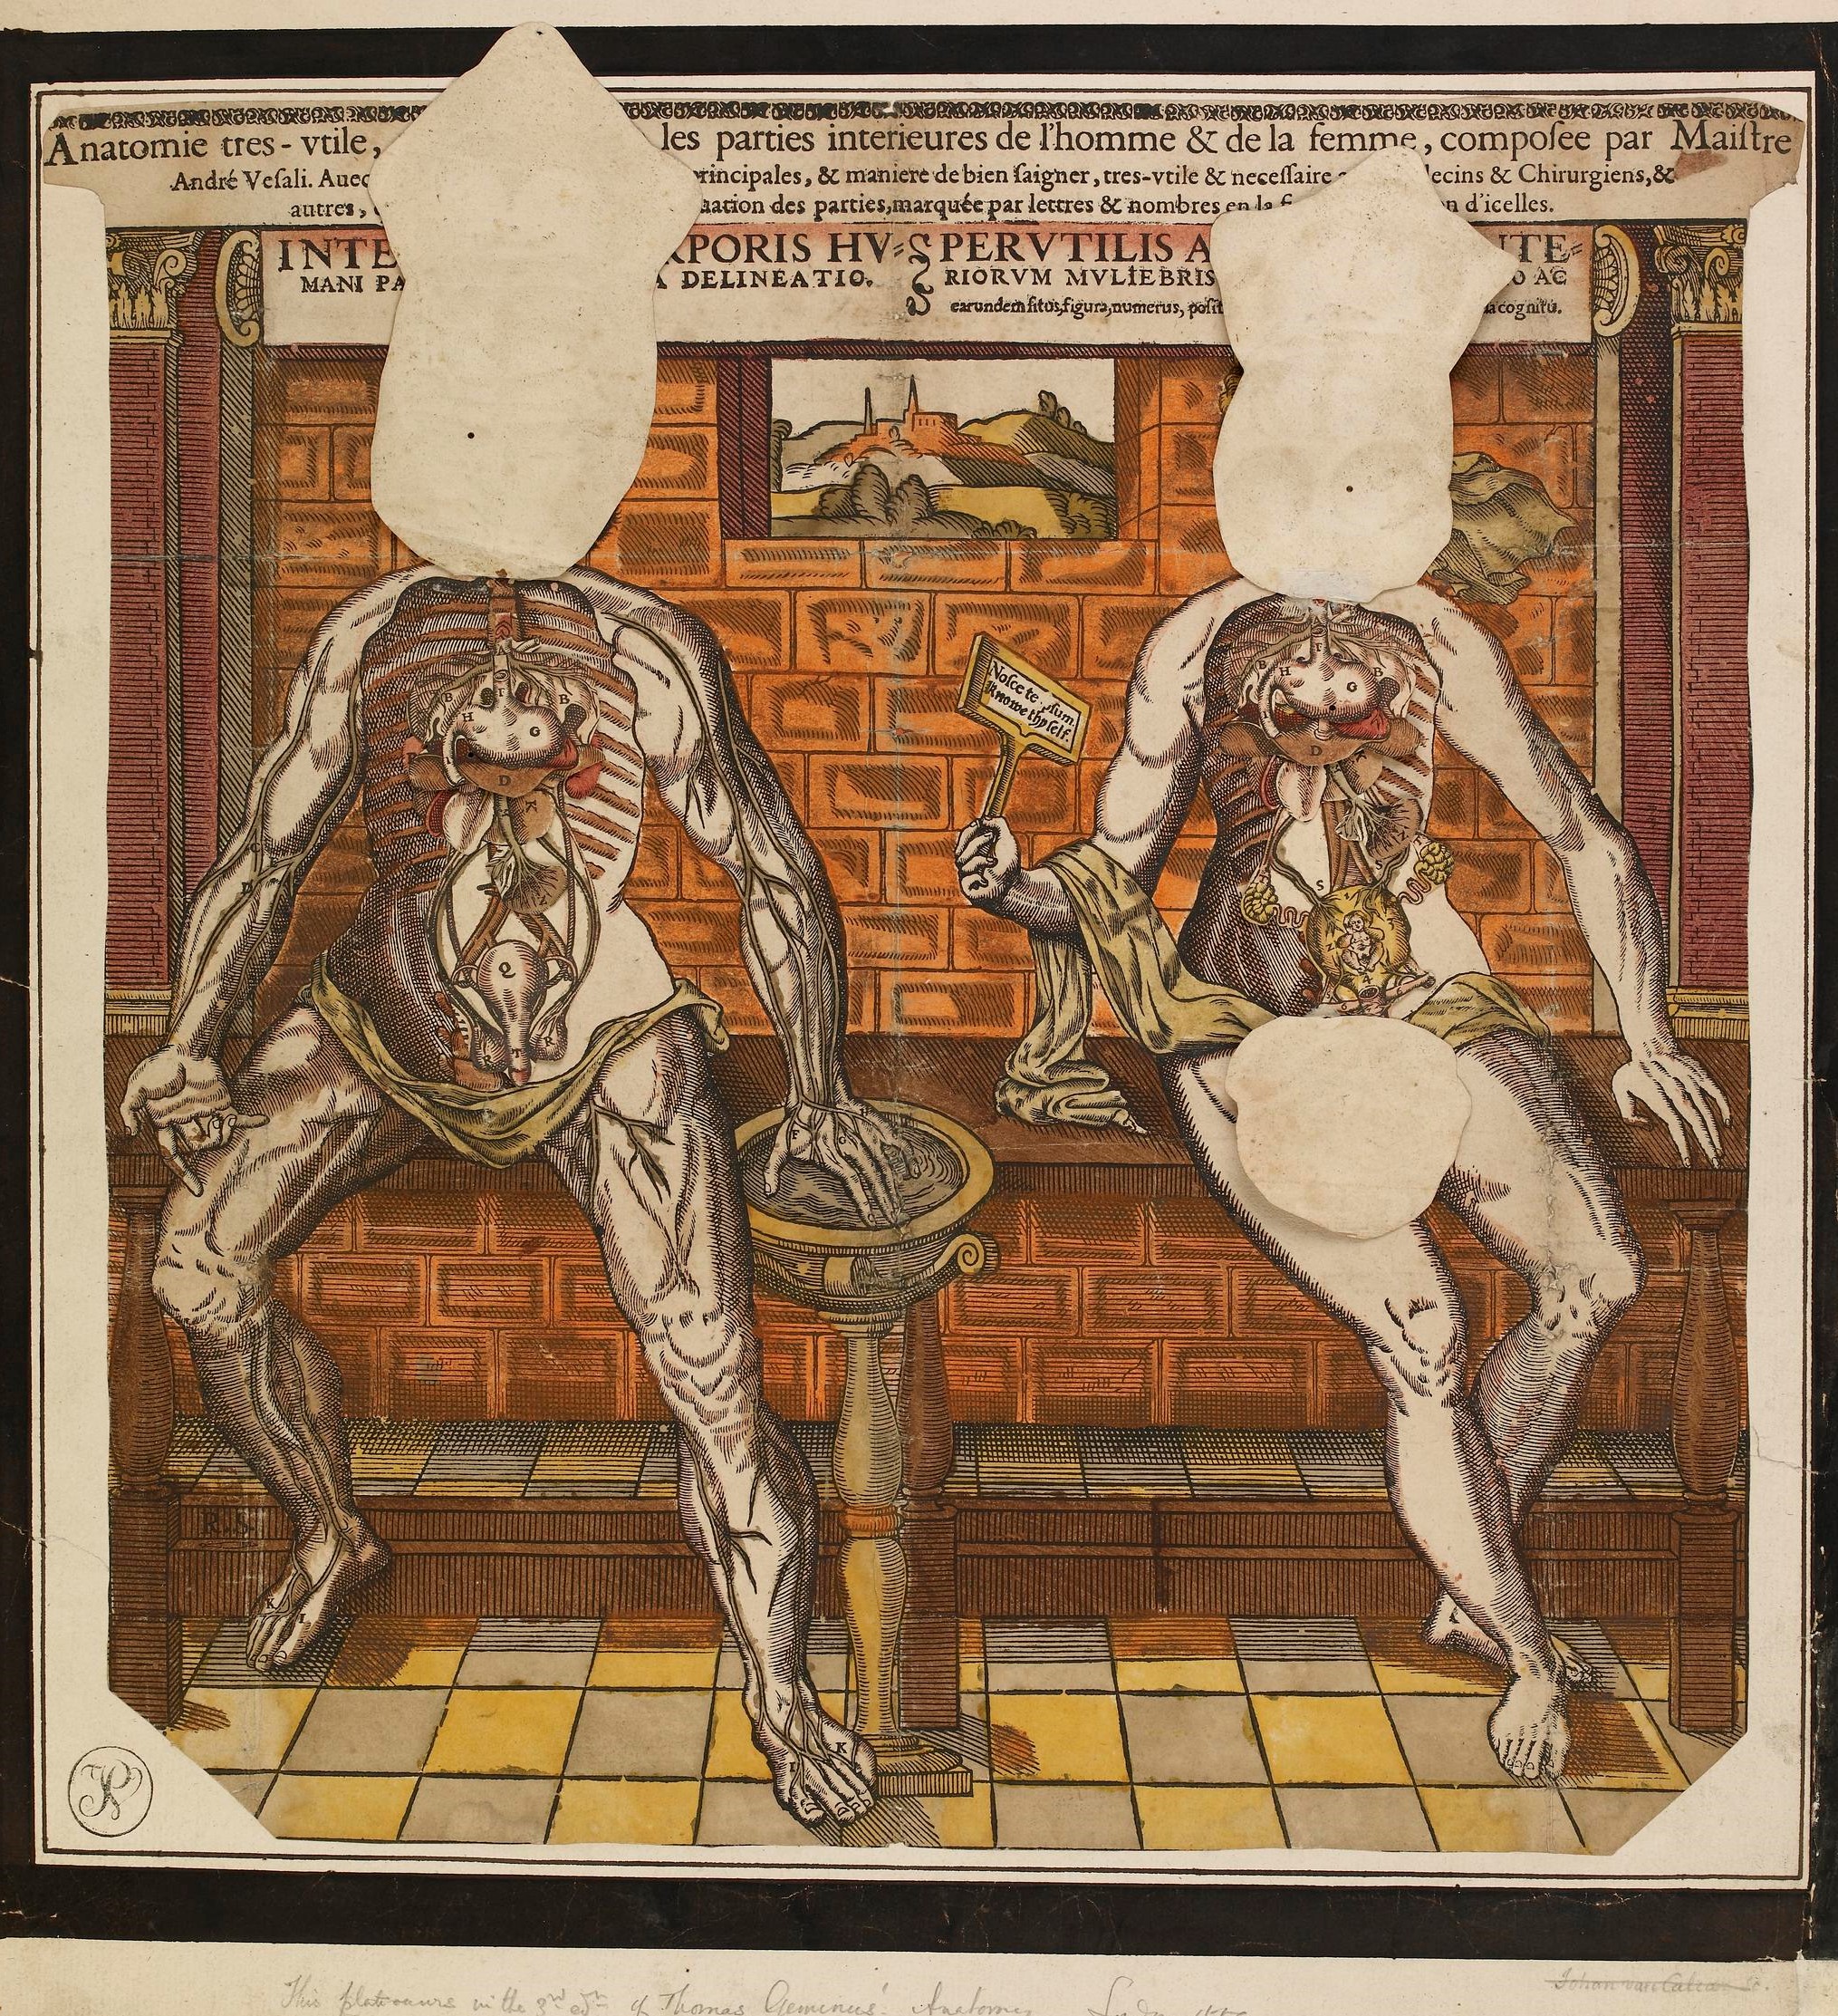 1547-68 Anatomie tres-utile edite par Gyles Godet (c) The Trustees of the British Museum B